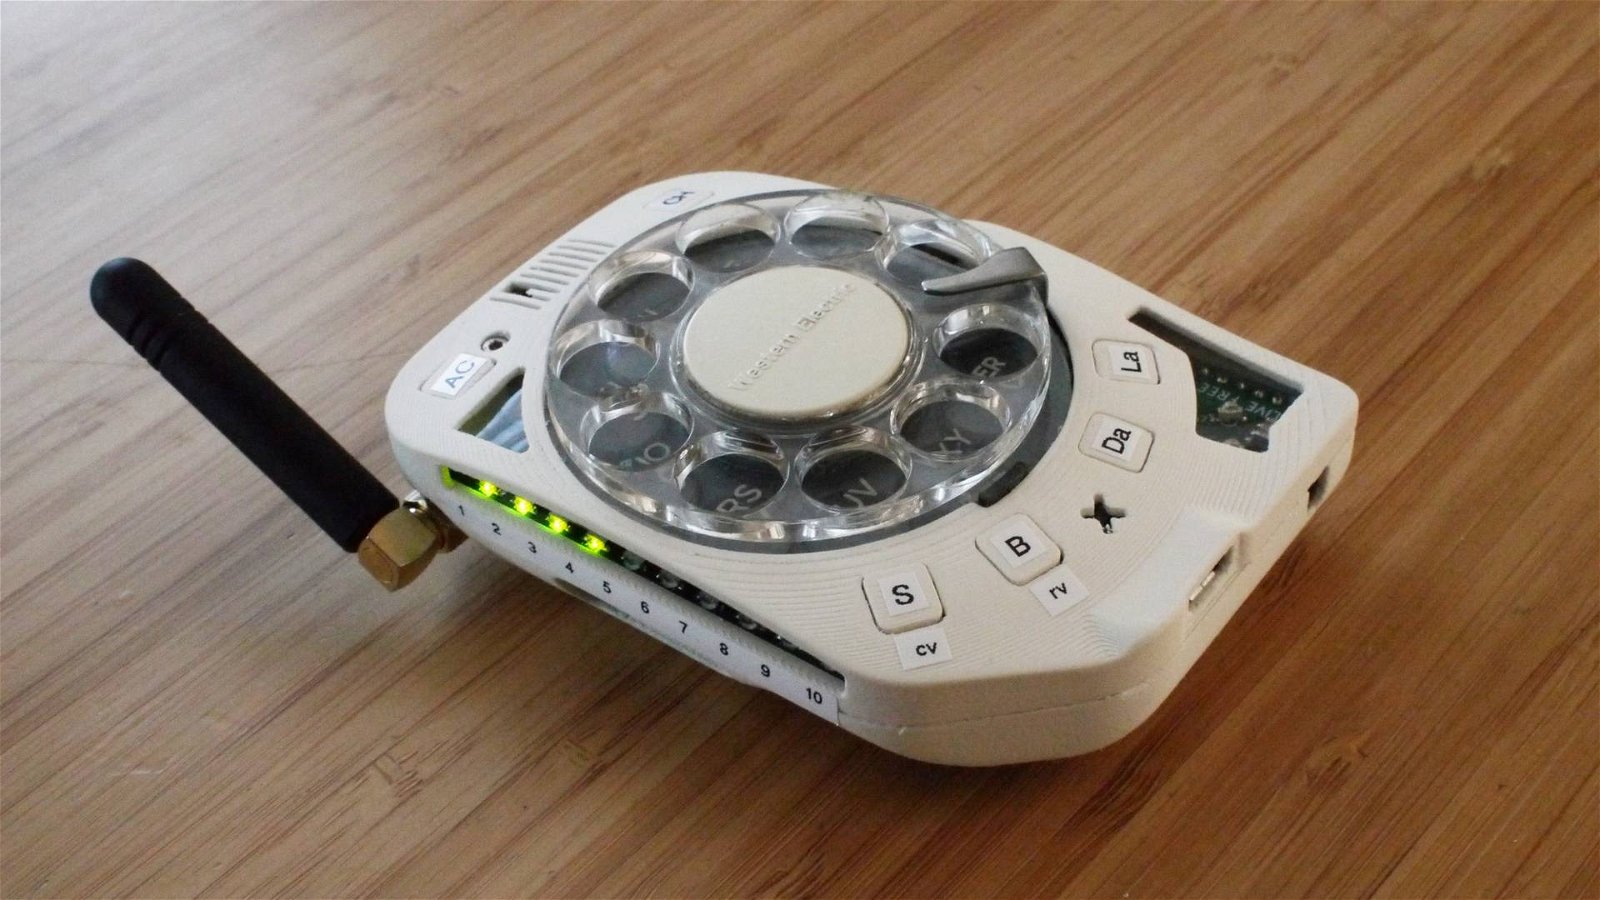 Immagine di Rotary Cellphone è un tuffo nel passato: cellulare con disco rotante per i numeri